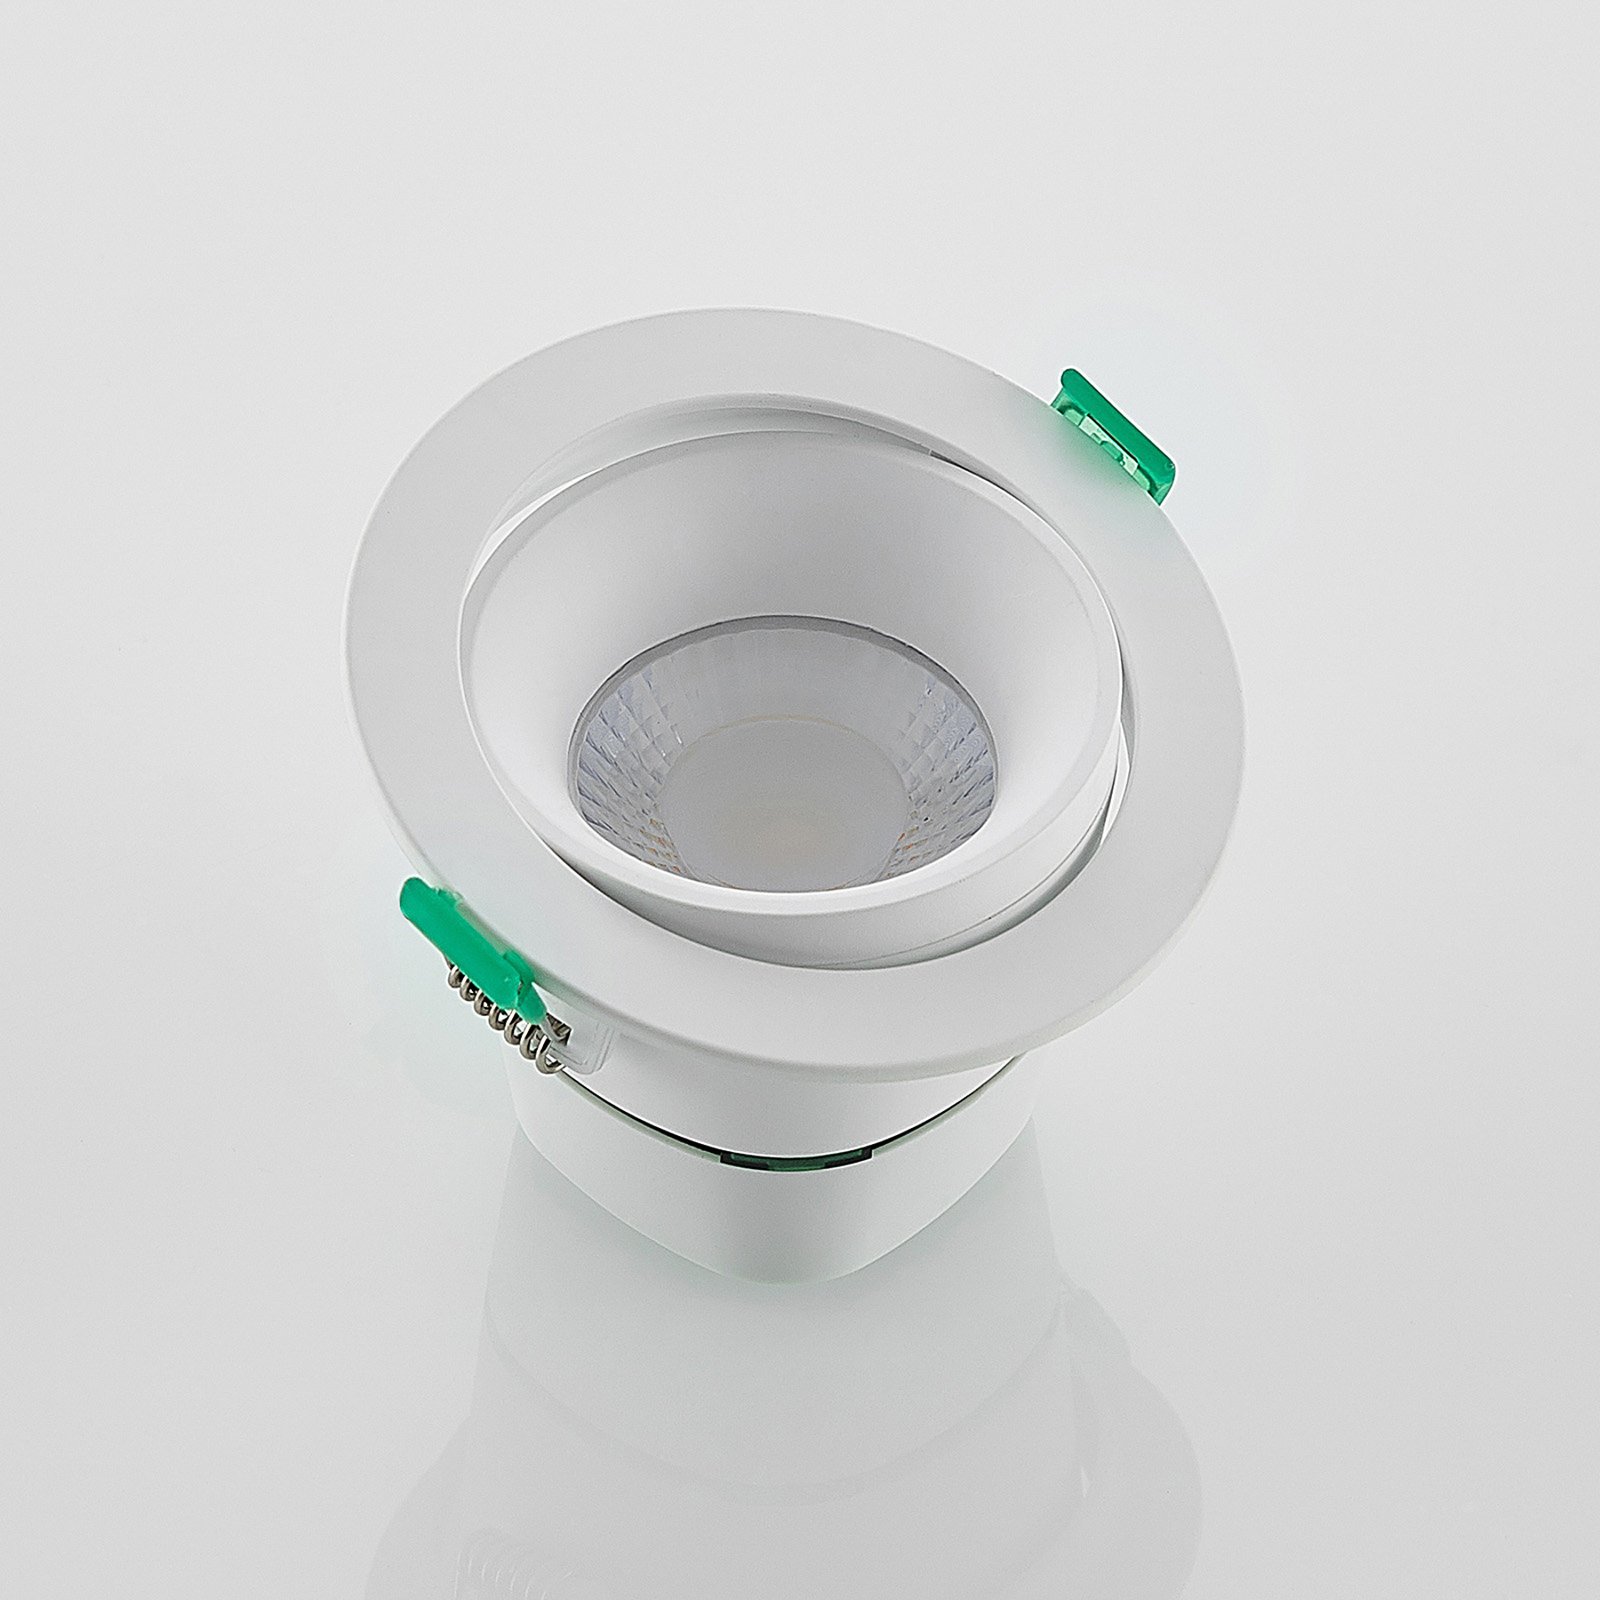 Arcchio LED vestavné svítidlo Katerin, bílé, otočné, sada 3 kusů